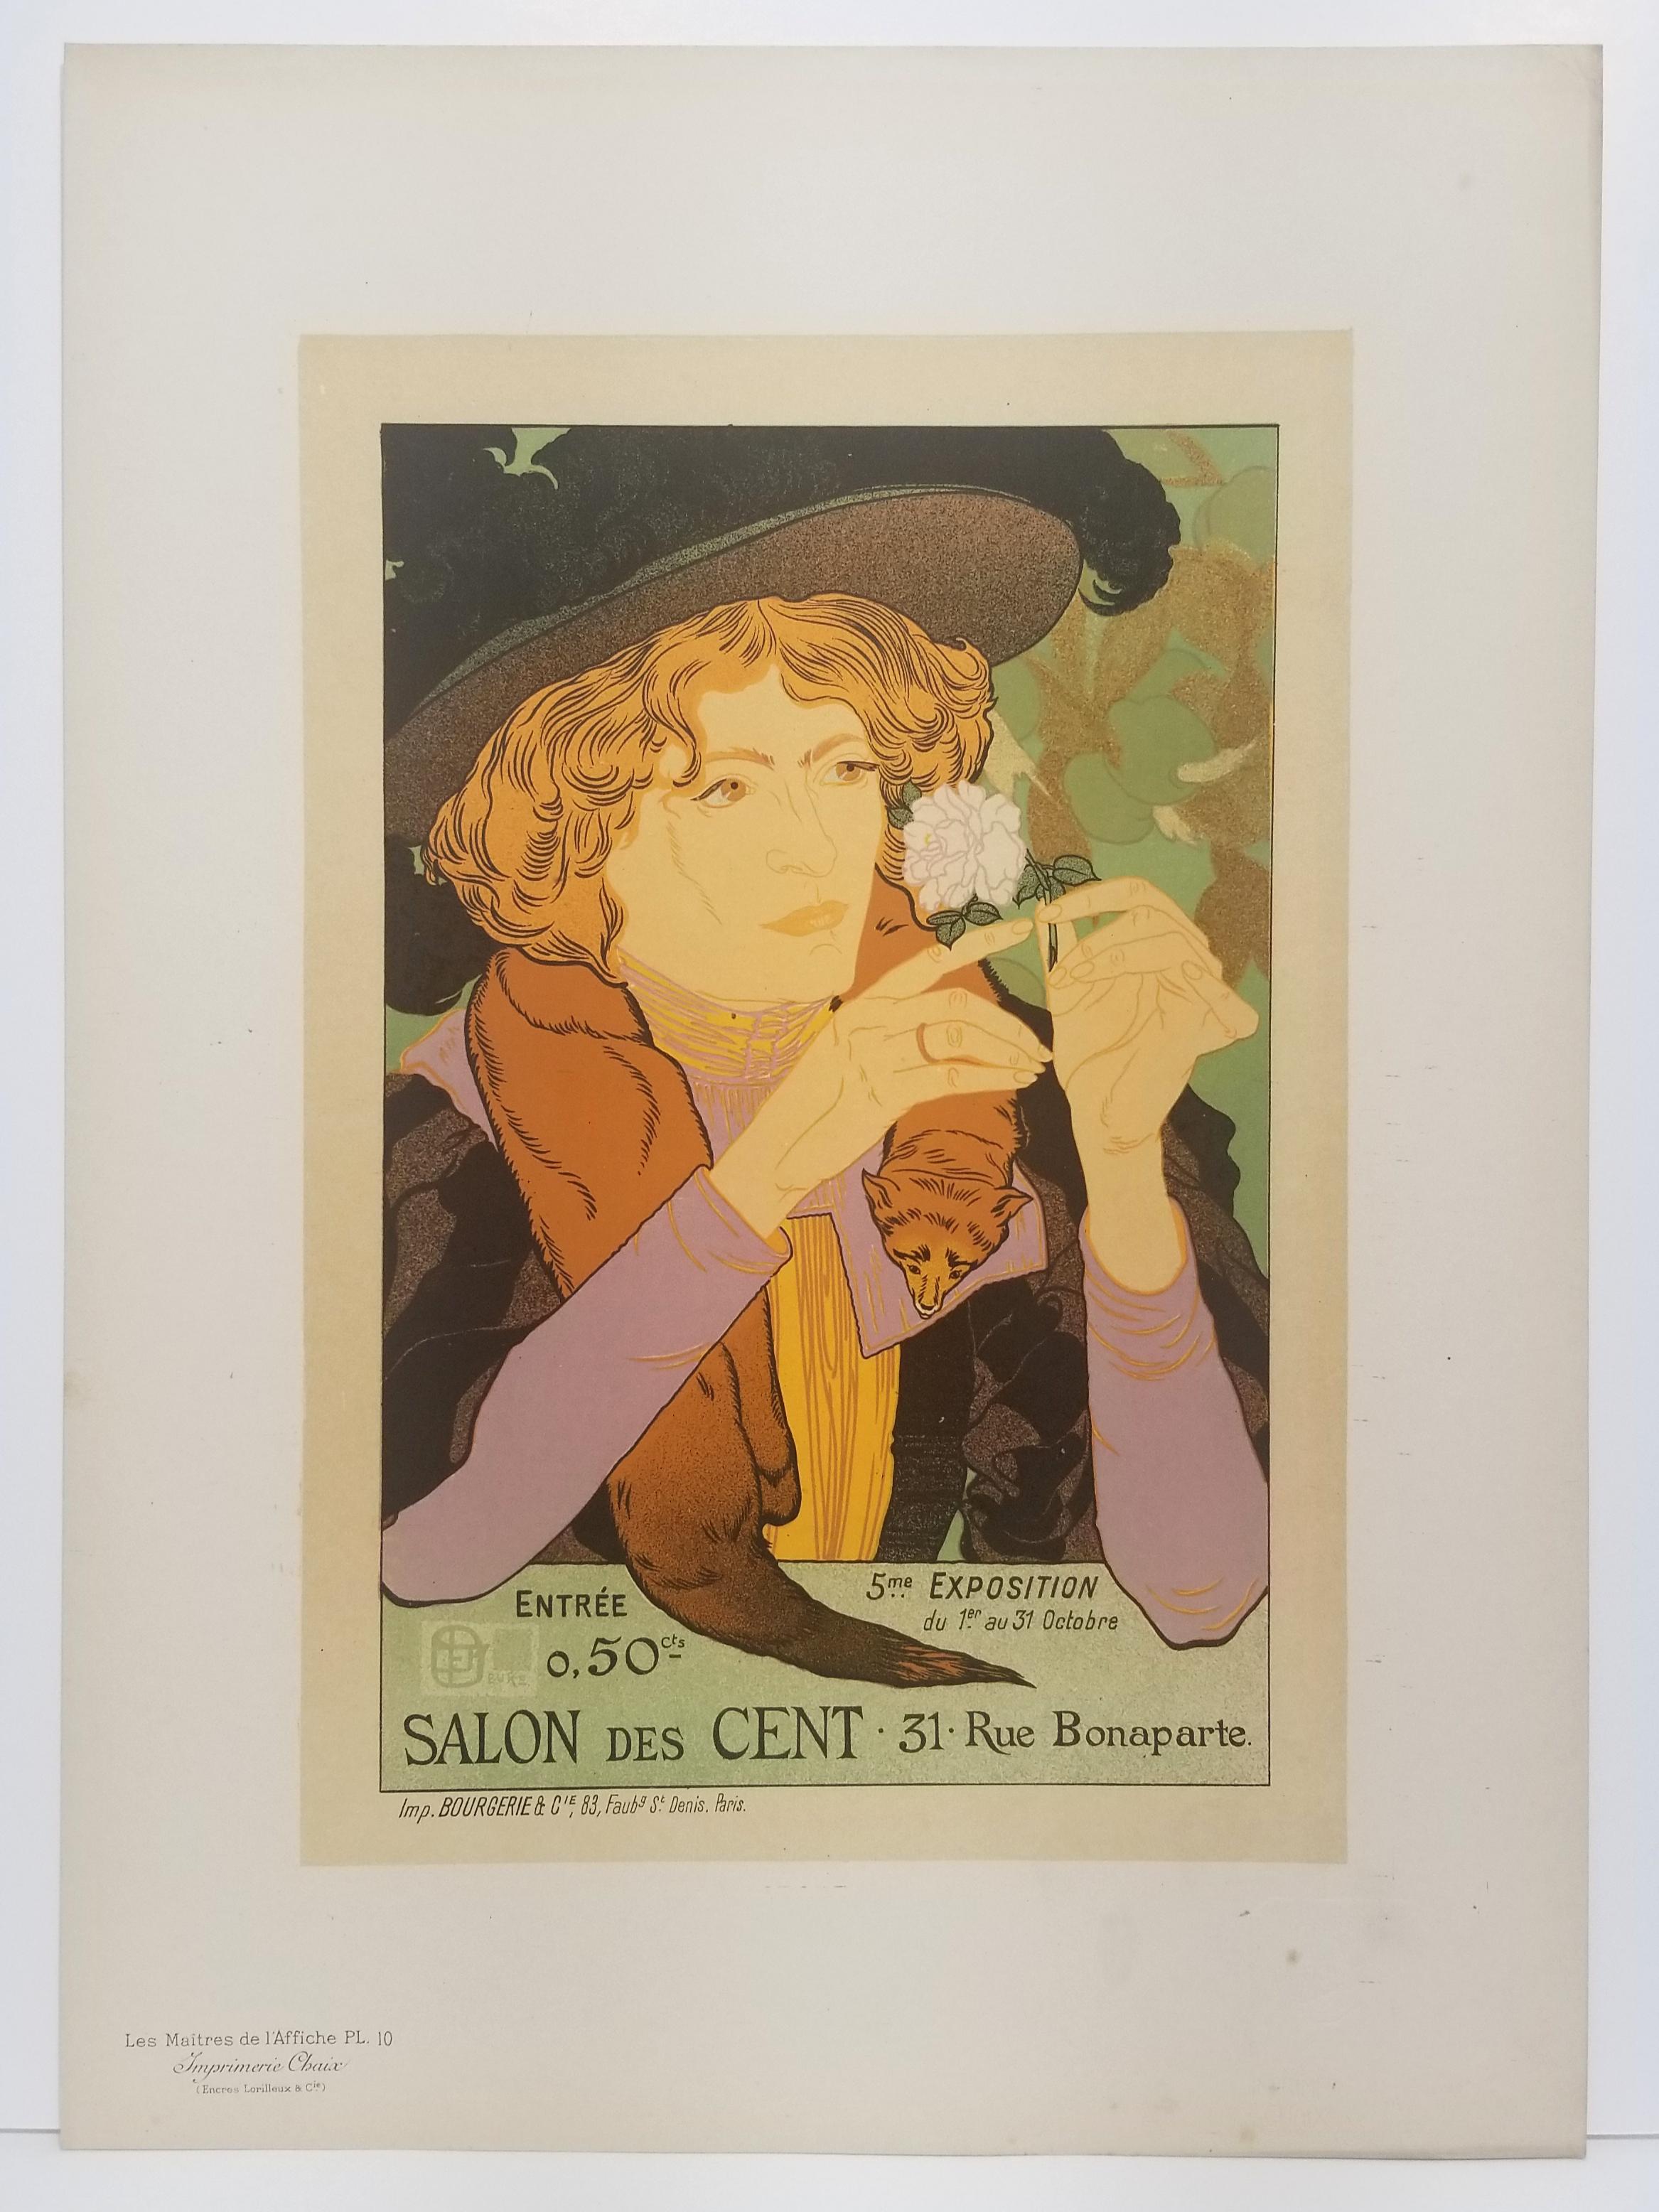 5ème exposition d'art, Salon des Cent.  - Print de Georges De Feure